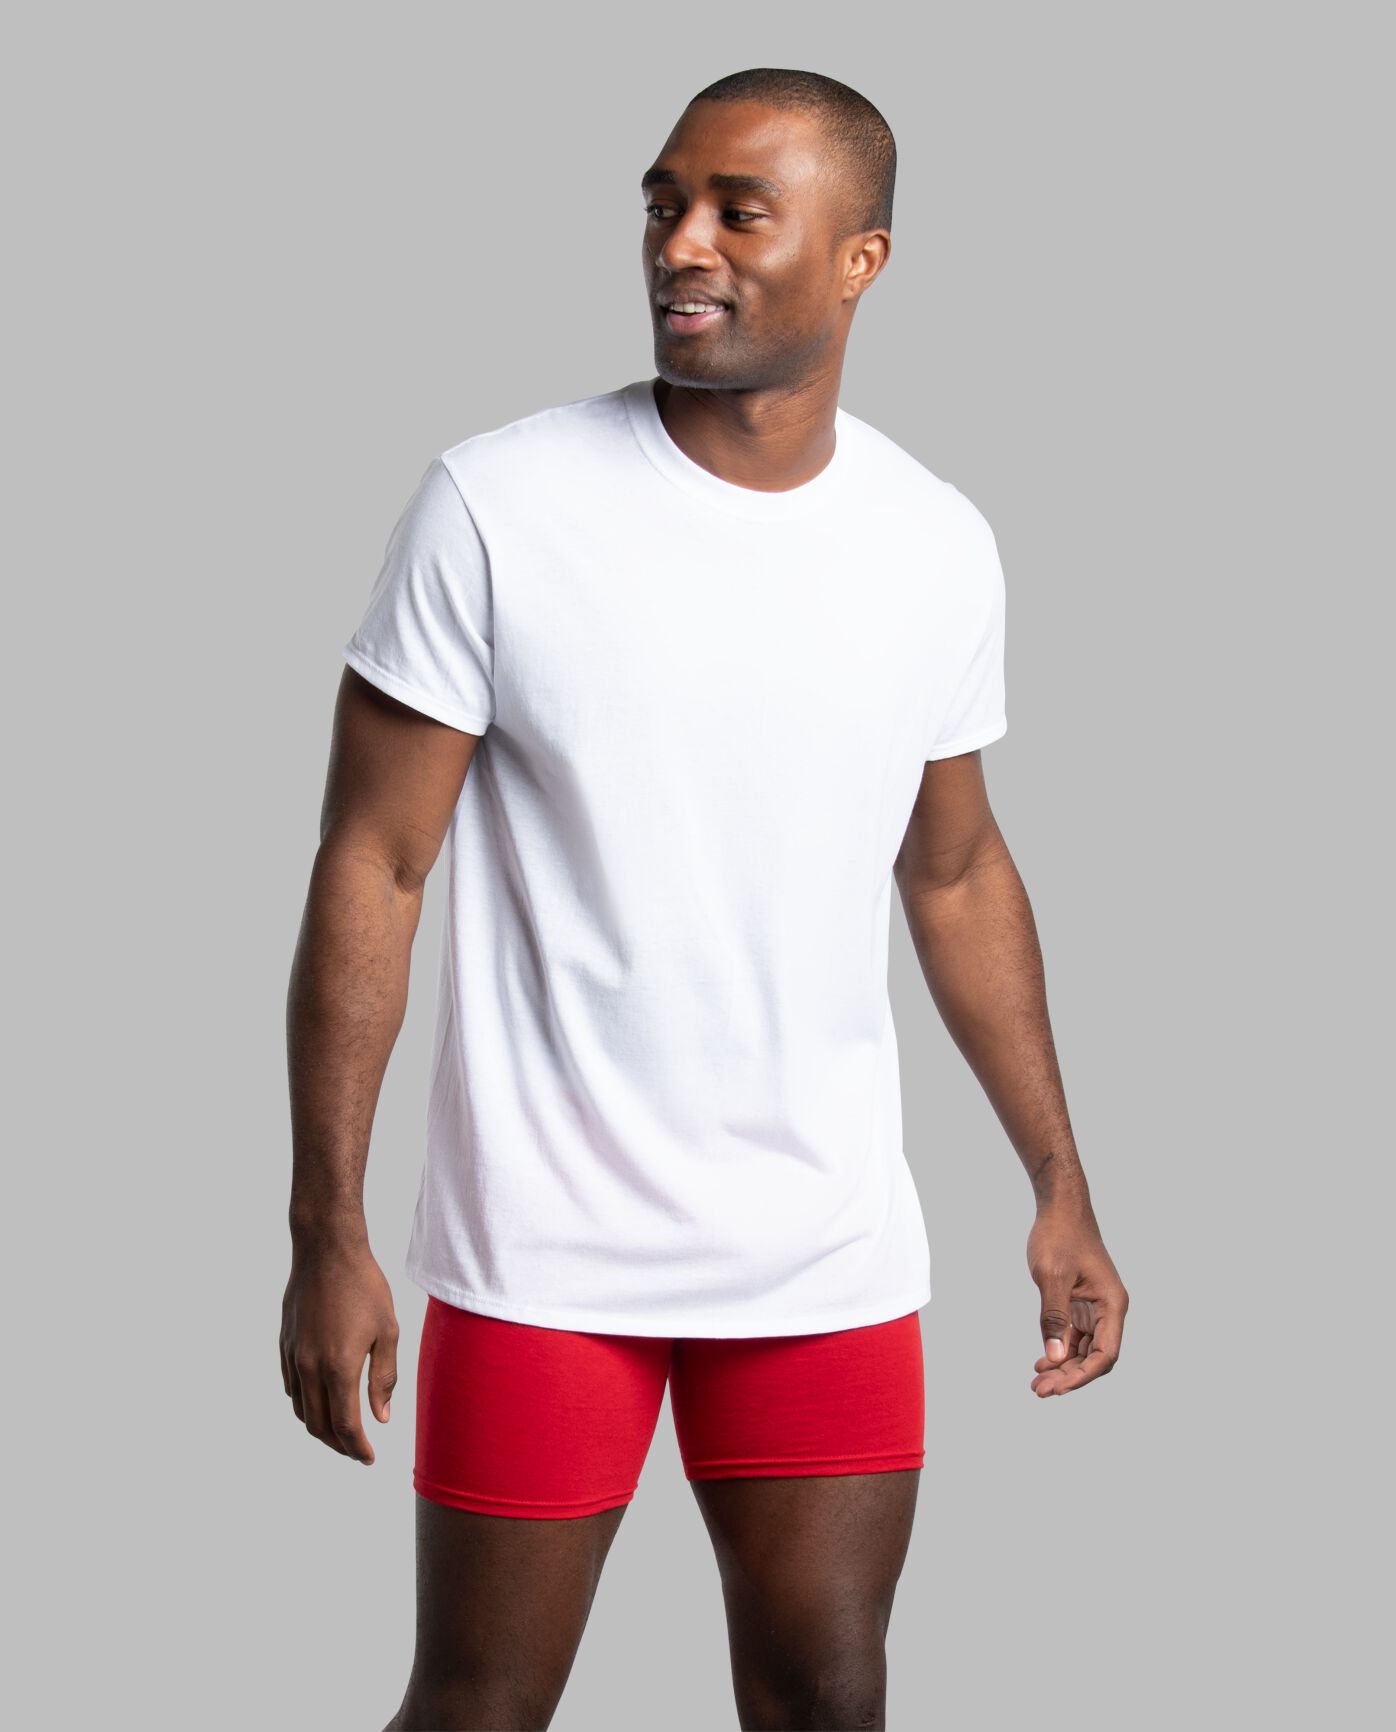 Men's Short Sleeve Active Cotton Blend White Crew T-Shirts